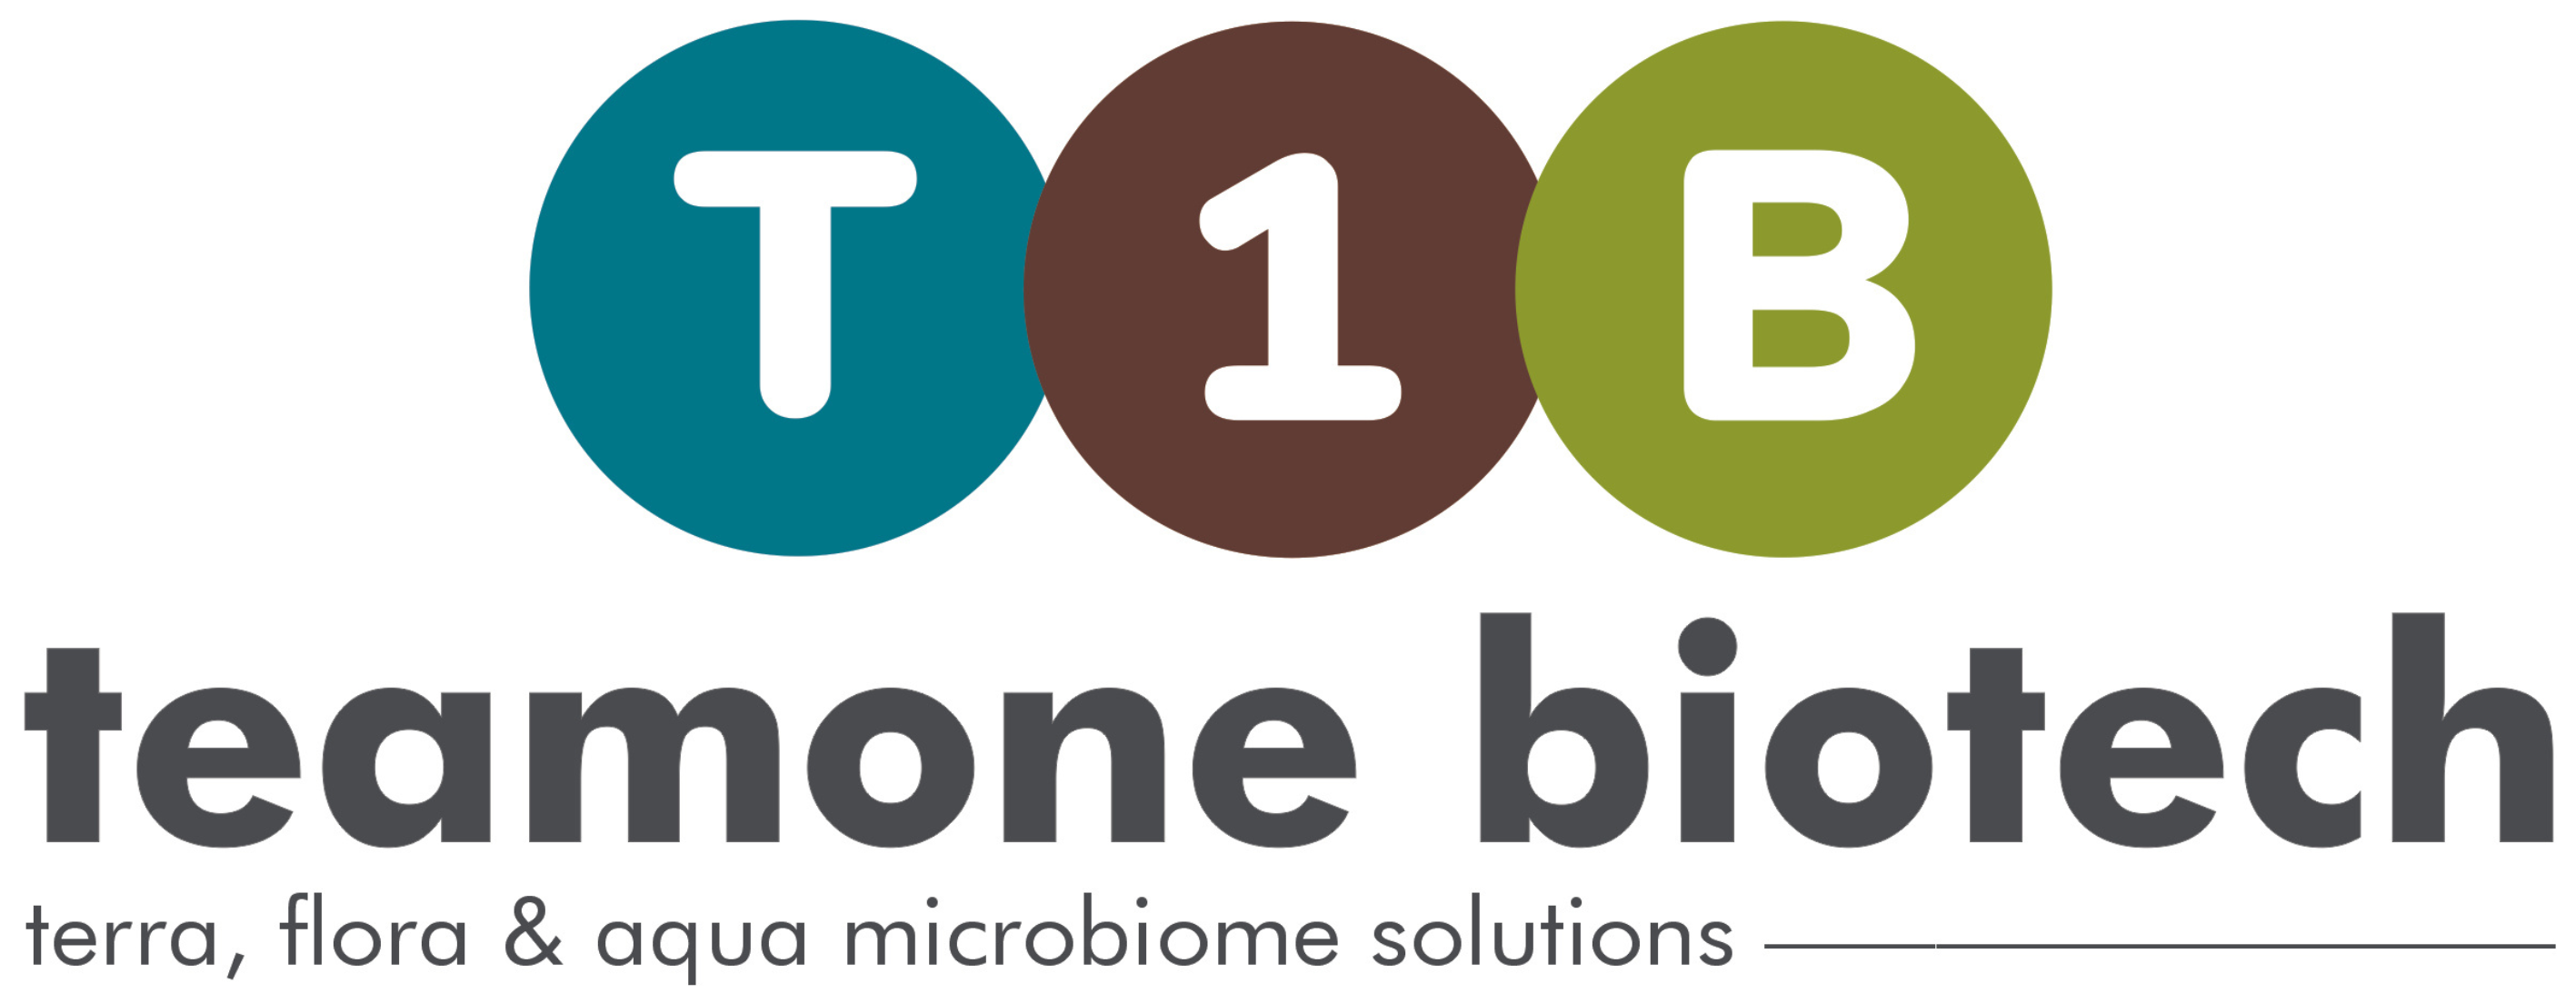 Team One Biotech - Terra, Flora & Aqua Microbiome Solutions